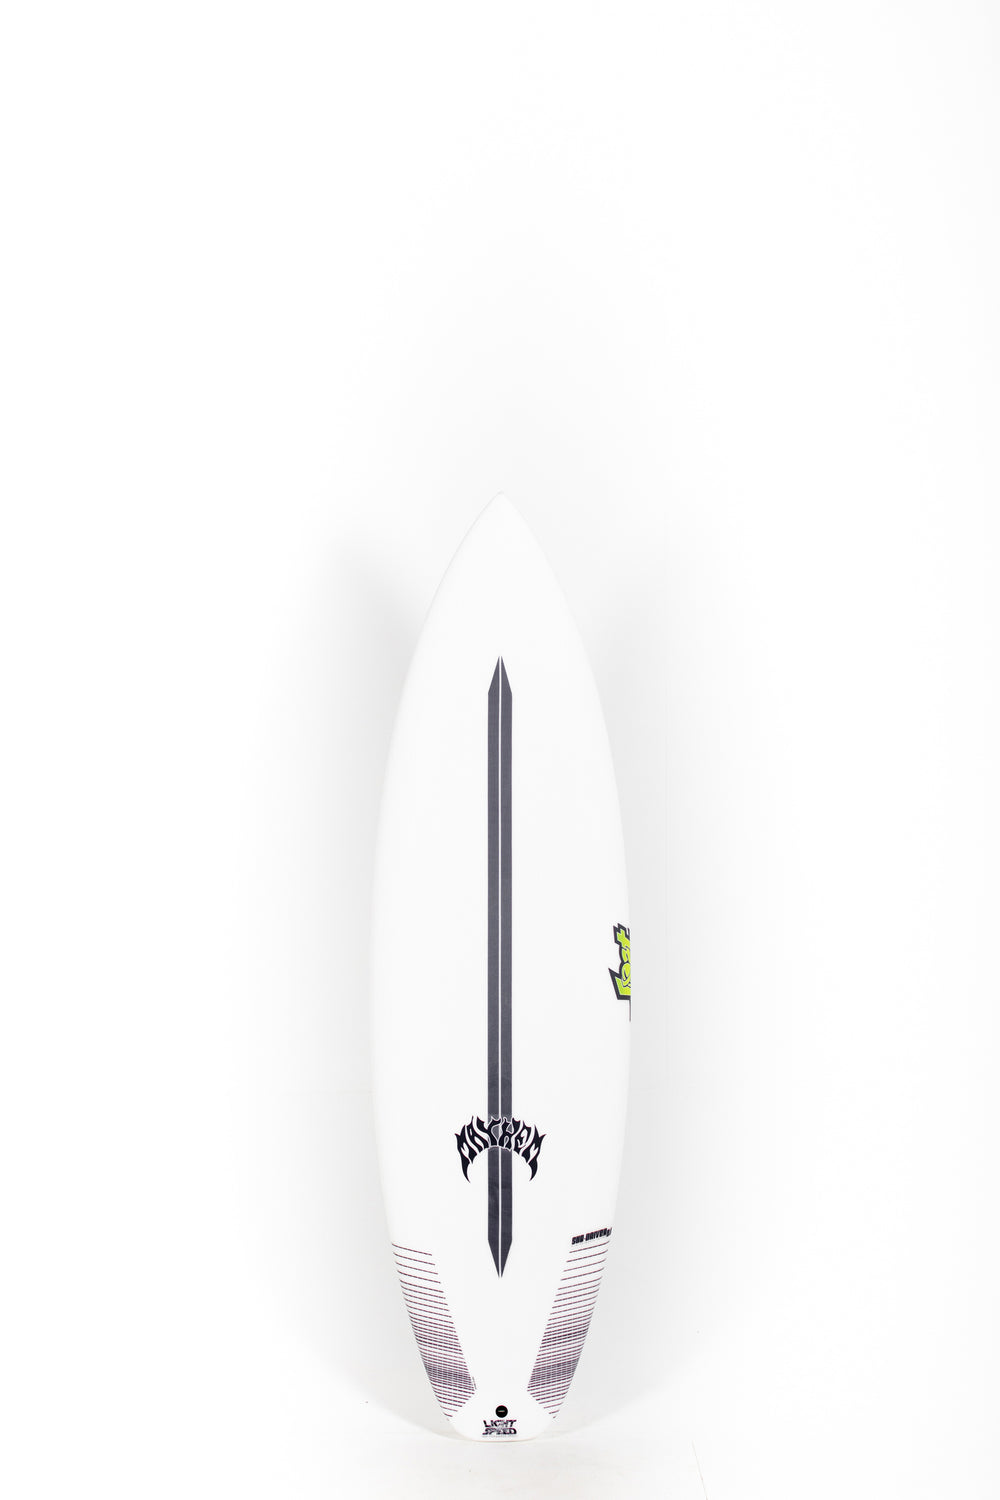 Lost Surfboard - SUB DRIVER 2.0 by Matt Biolos - Light Speed - 5 